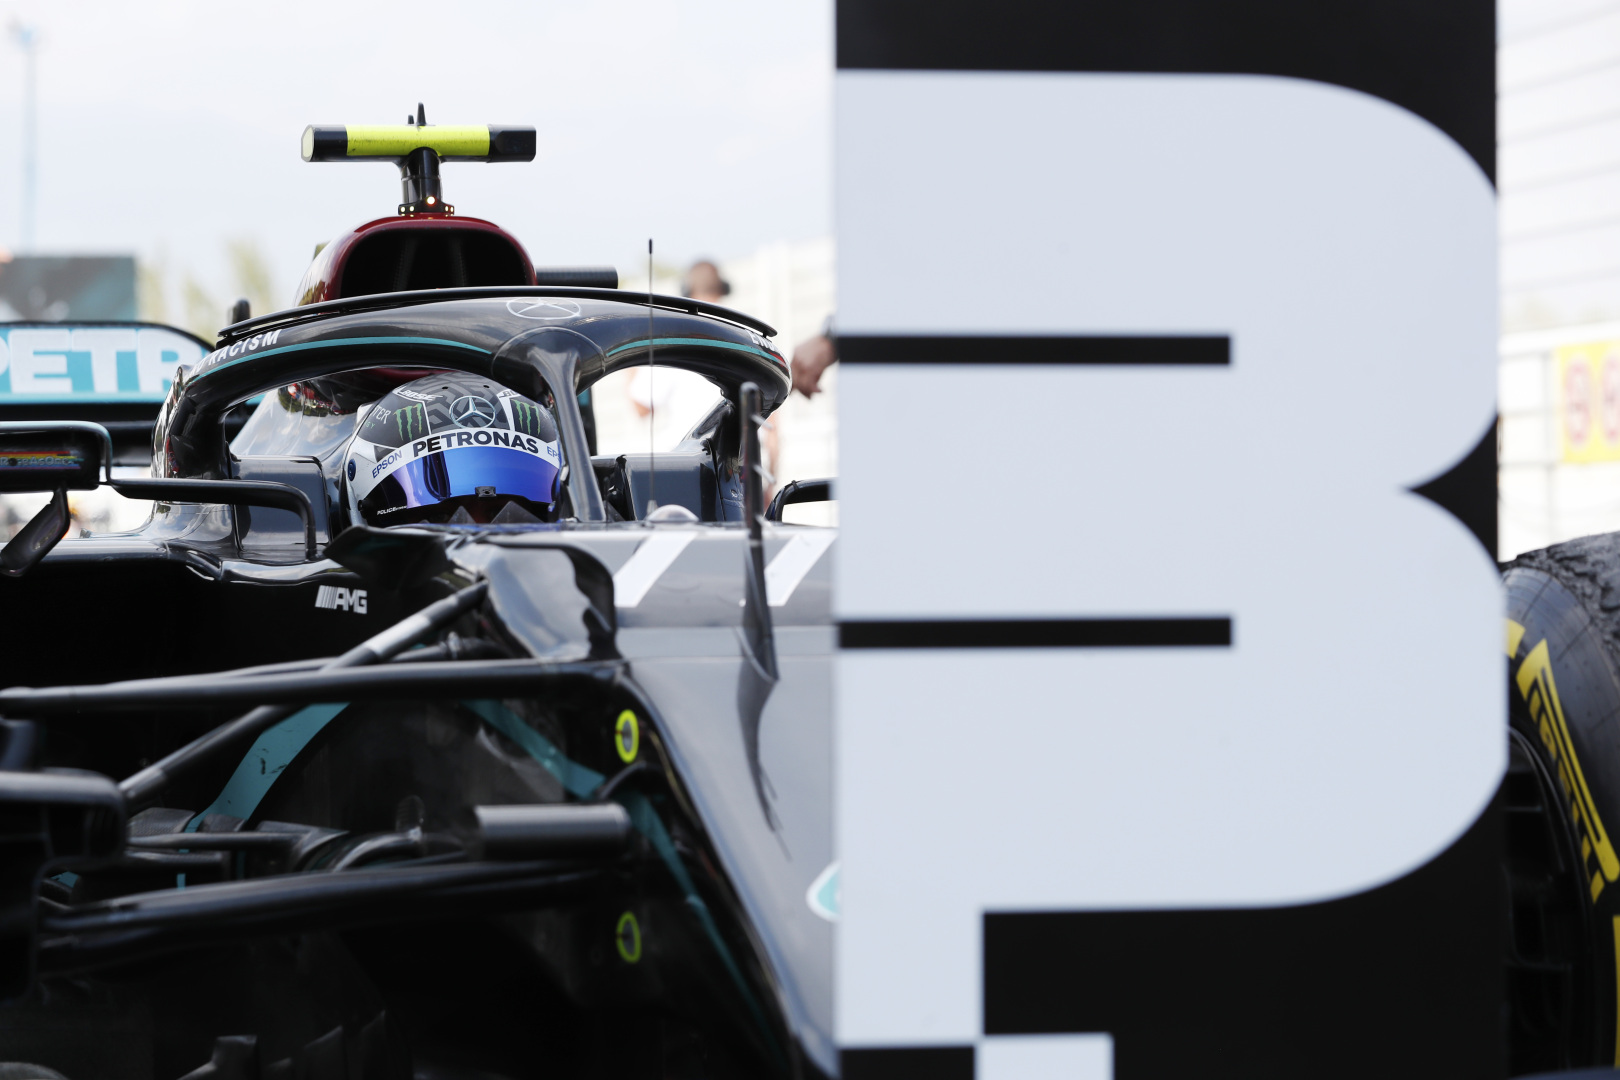 2020 Spanish Grand Prix, Sunday - Valtteri Bottas (image courtesy Mercedes-AMG Petronas)